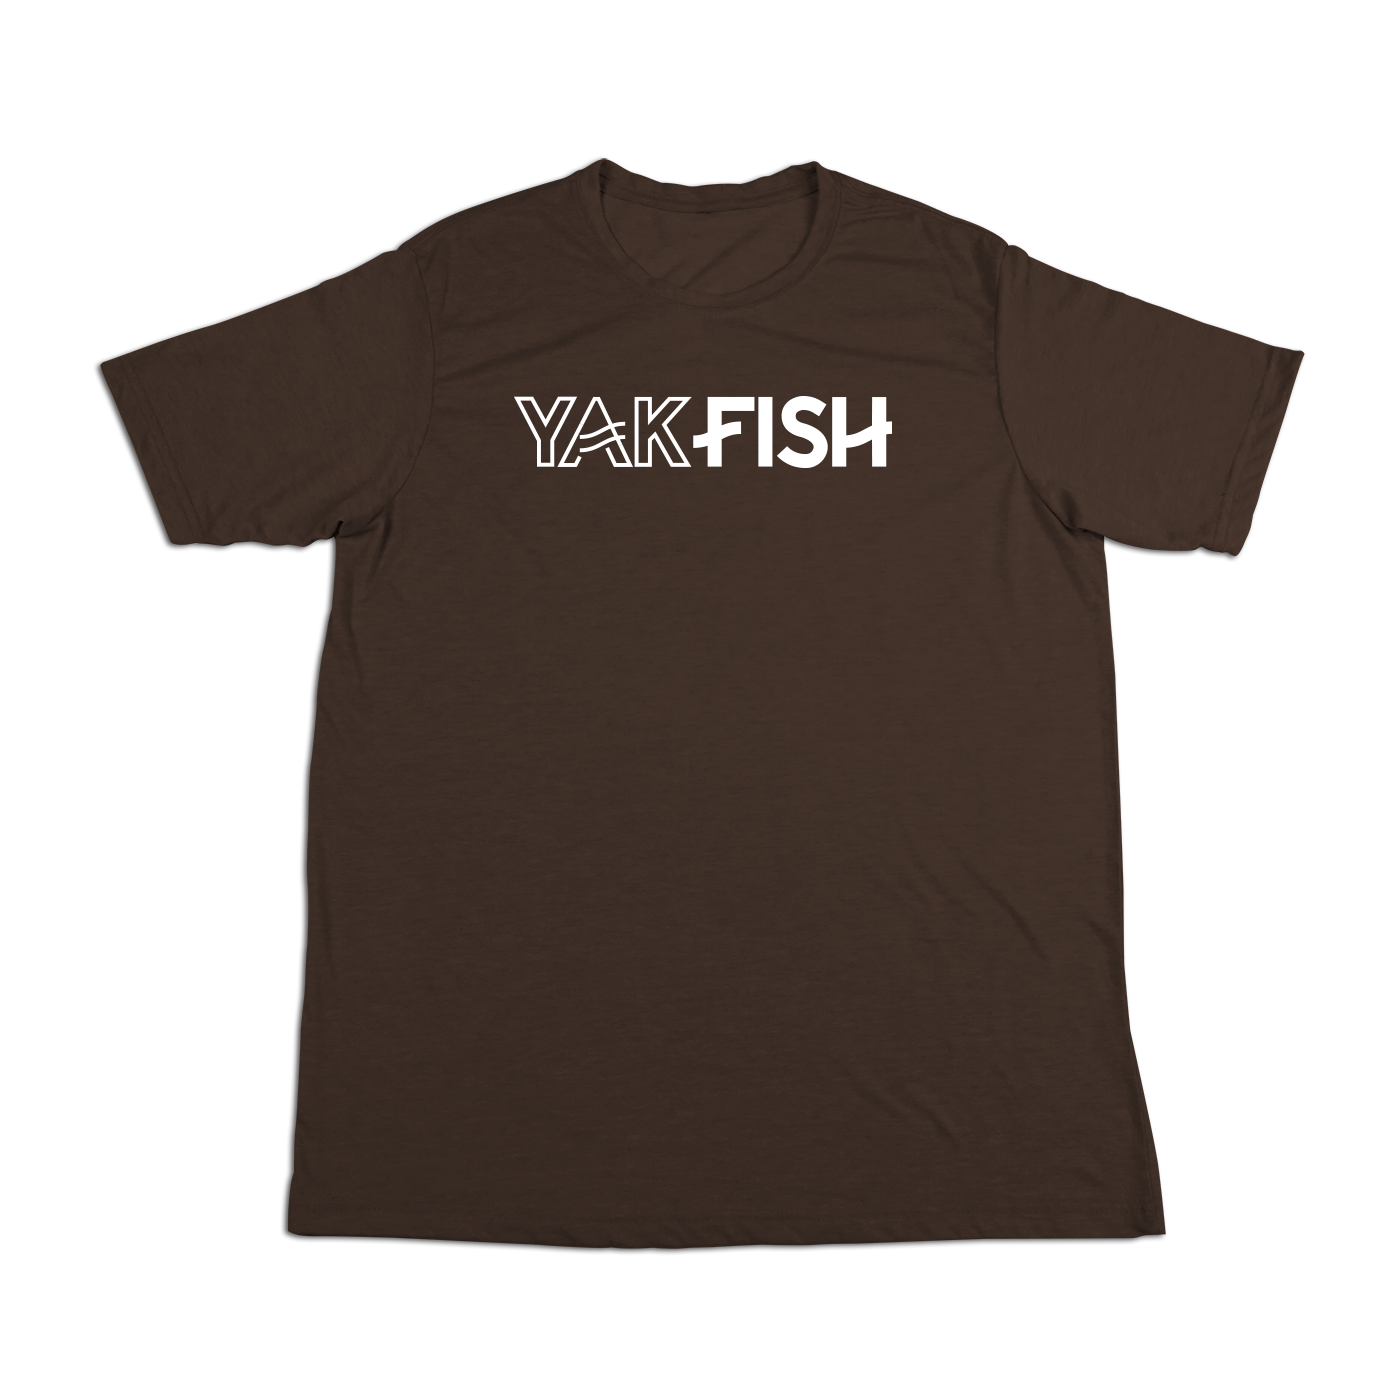 #YAKFISH Soft Short Sleeve Shirt - Hat Mount for GoPro